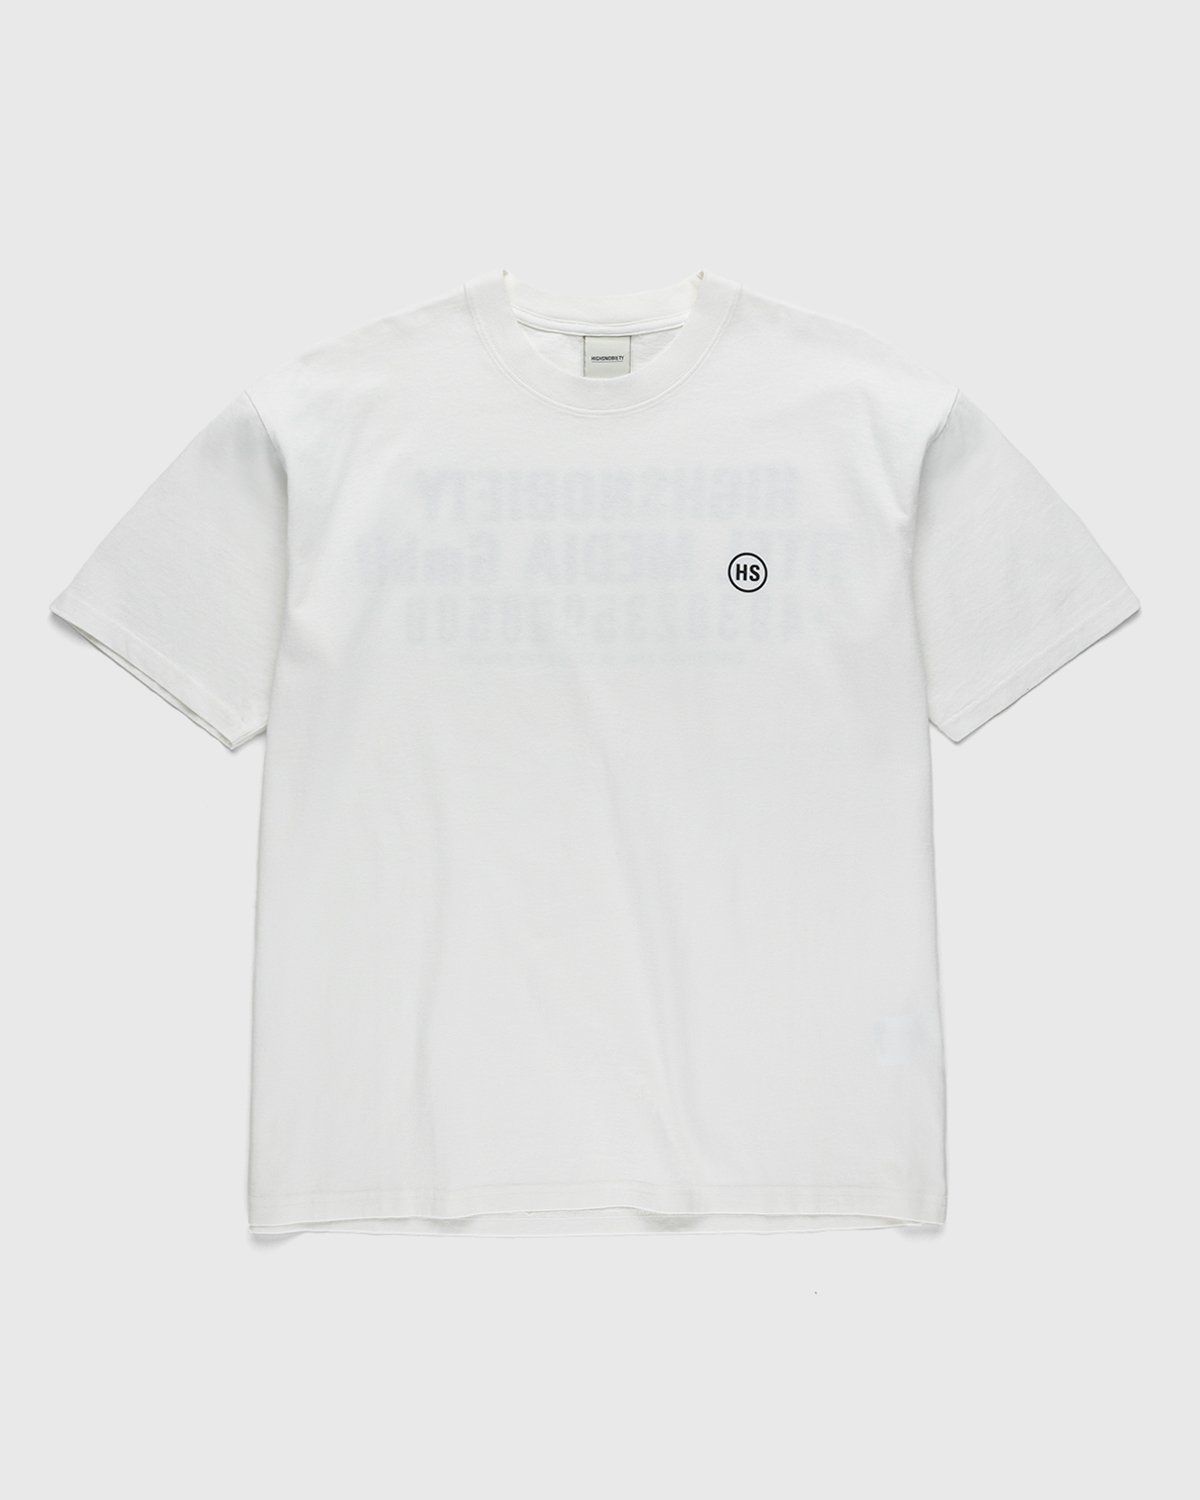 Highsnobiety – Titel Media GmbH T-Shirt White - Image 2